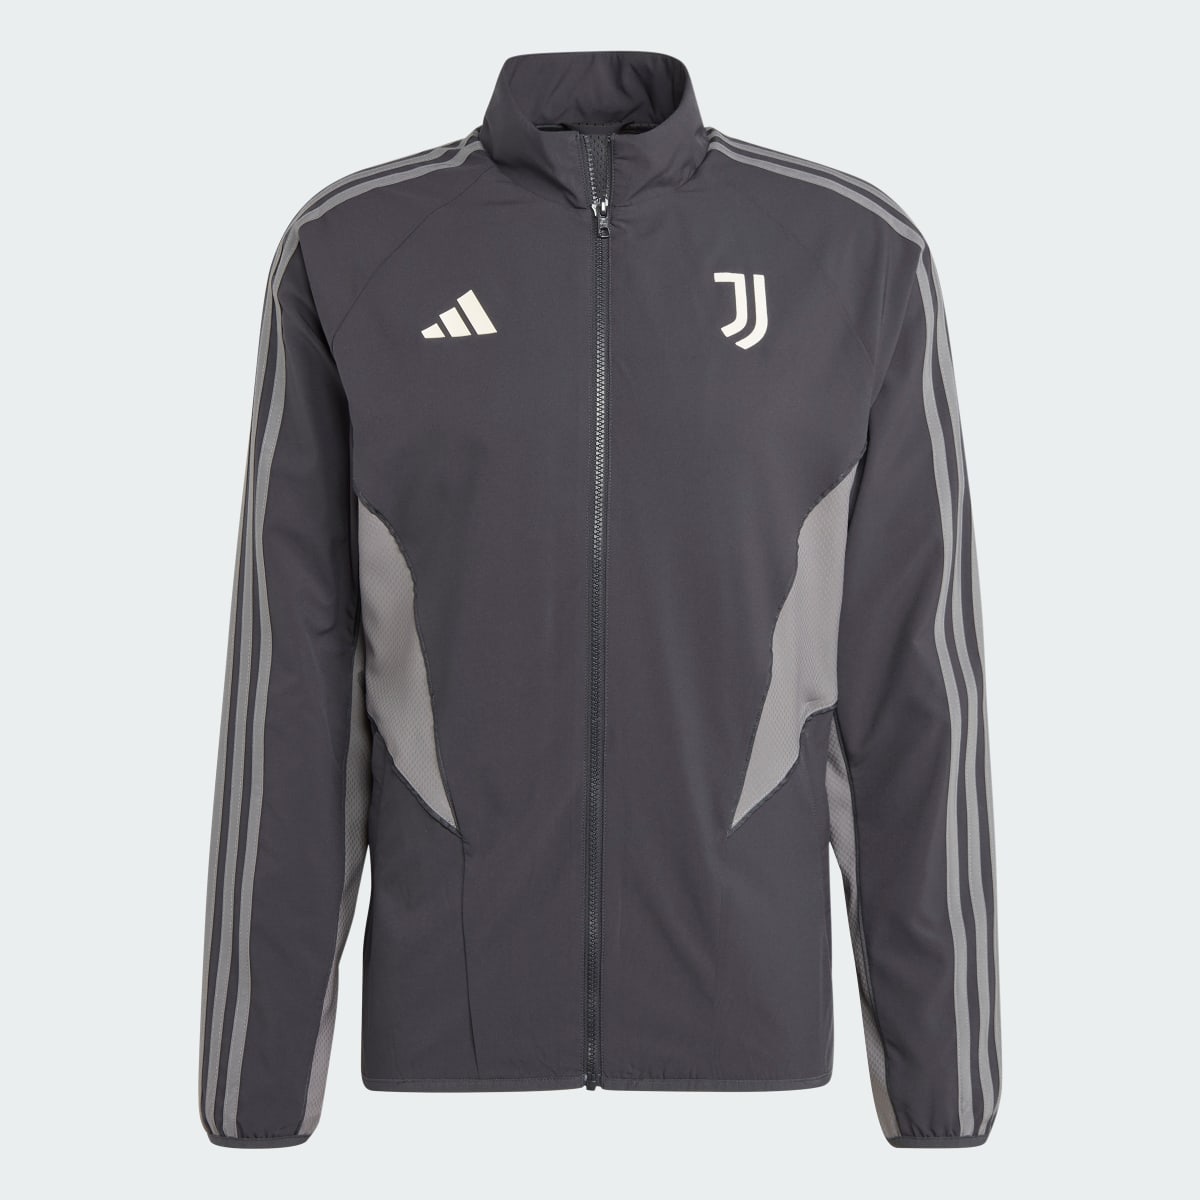 Adidas Giacca Anthem Juventus. 6